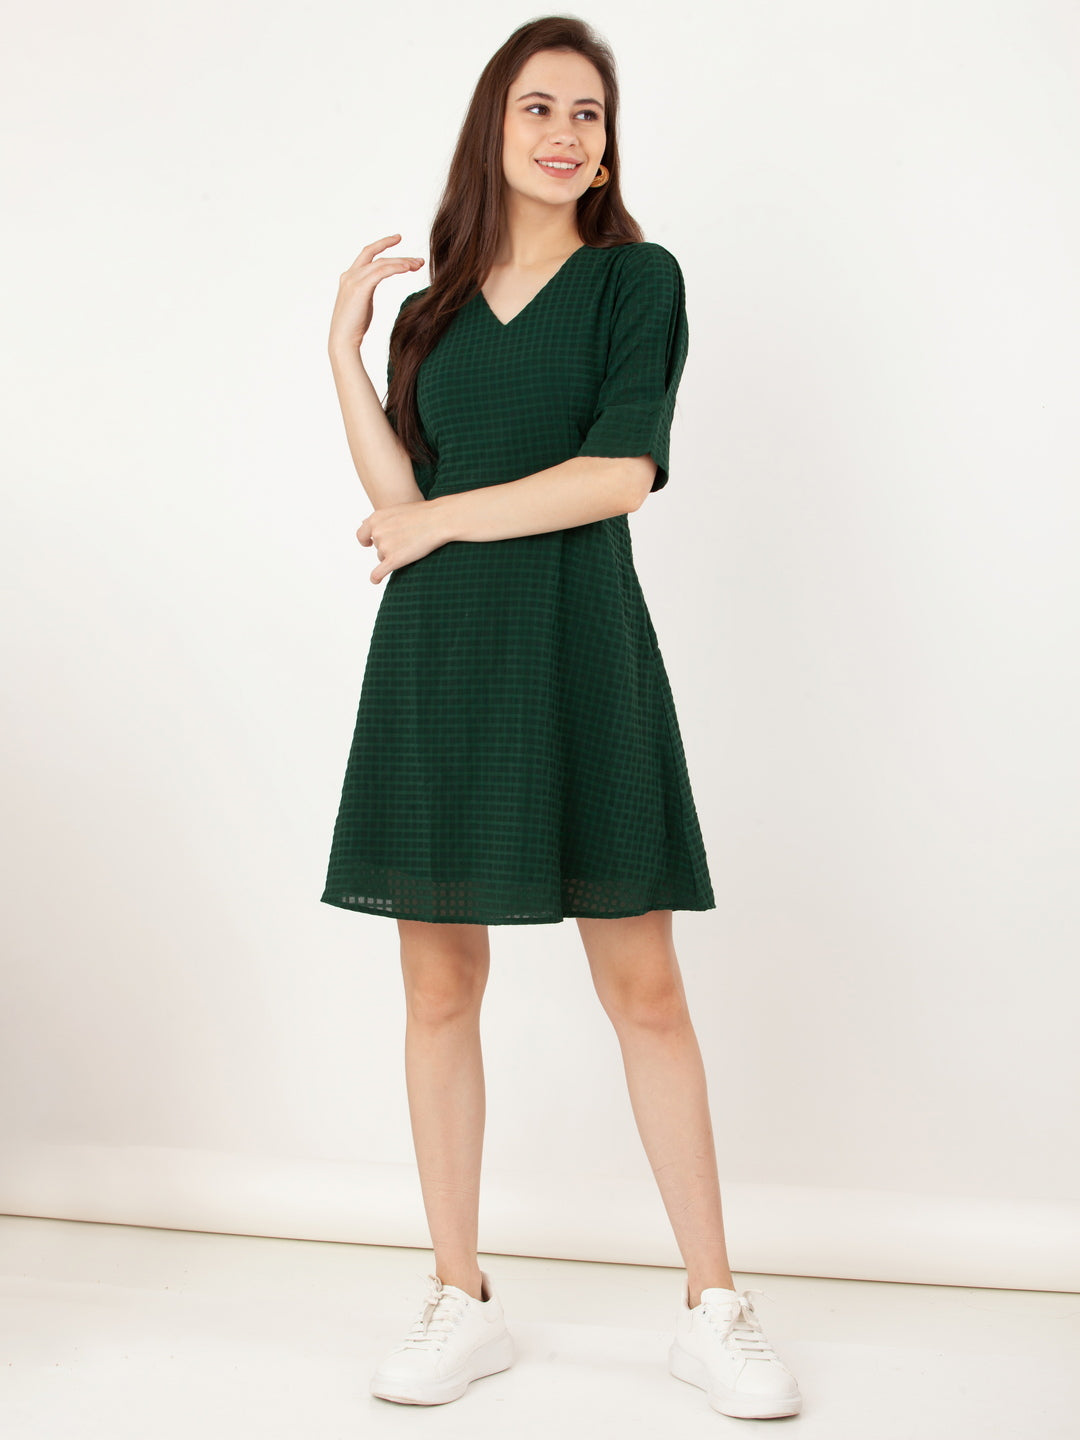 Green_Checks_A-Line_Short_Dress_1